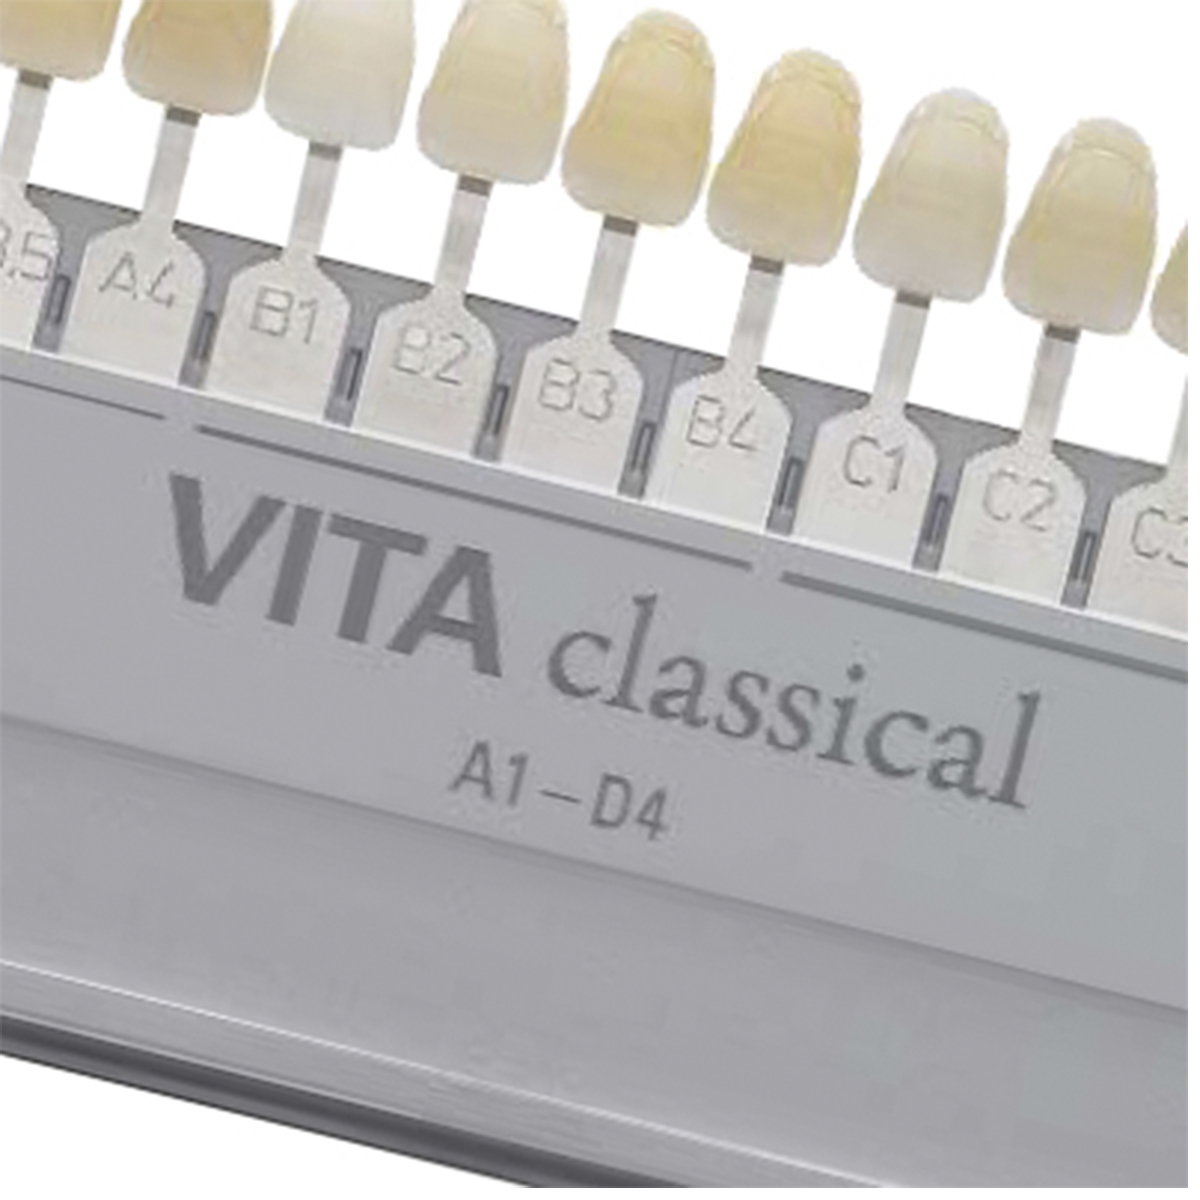 Escala VITA Classical - cores A1 - D4